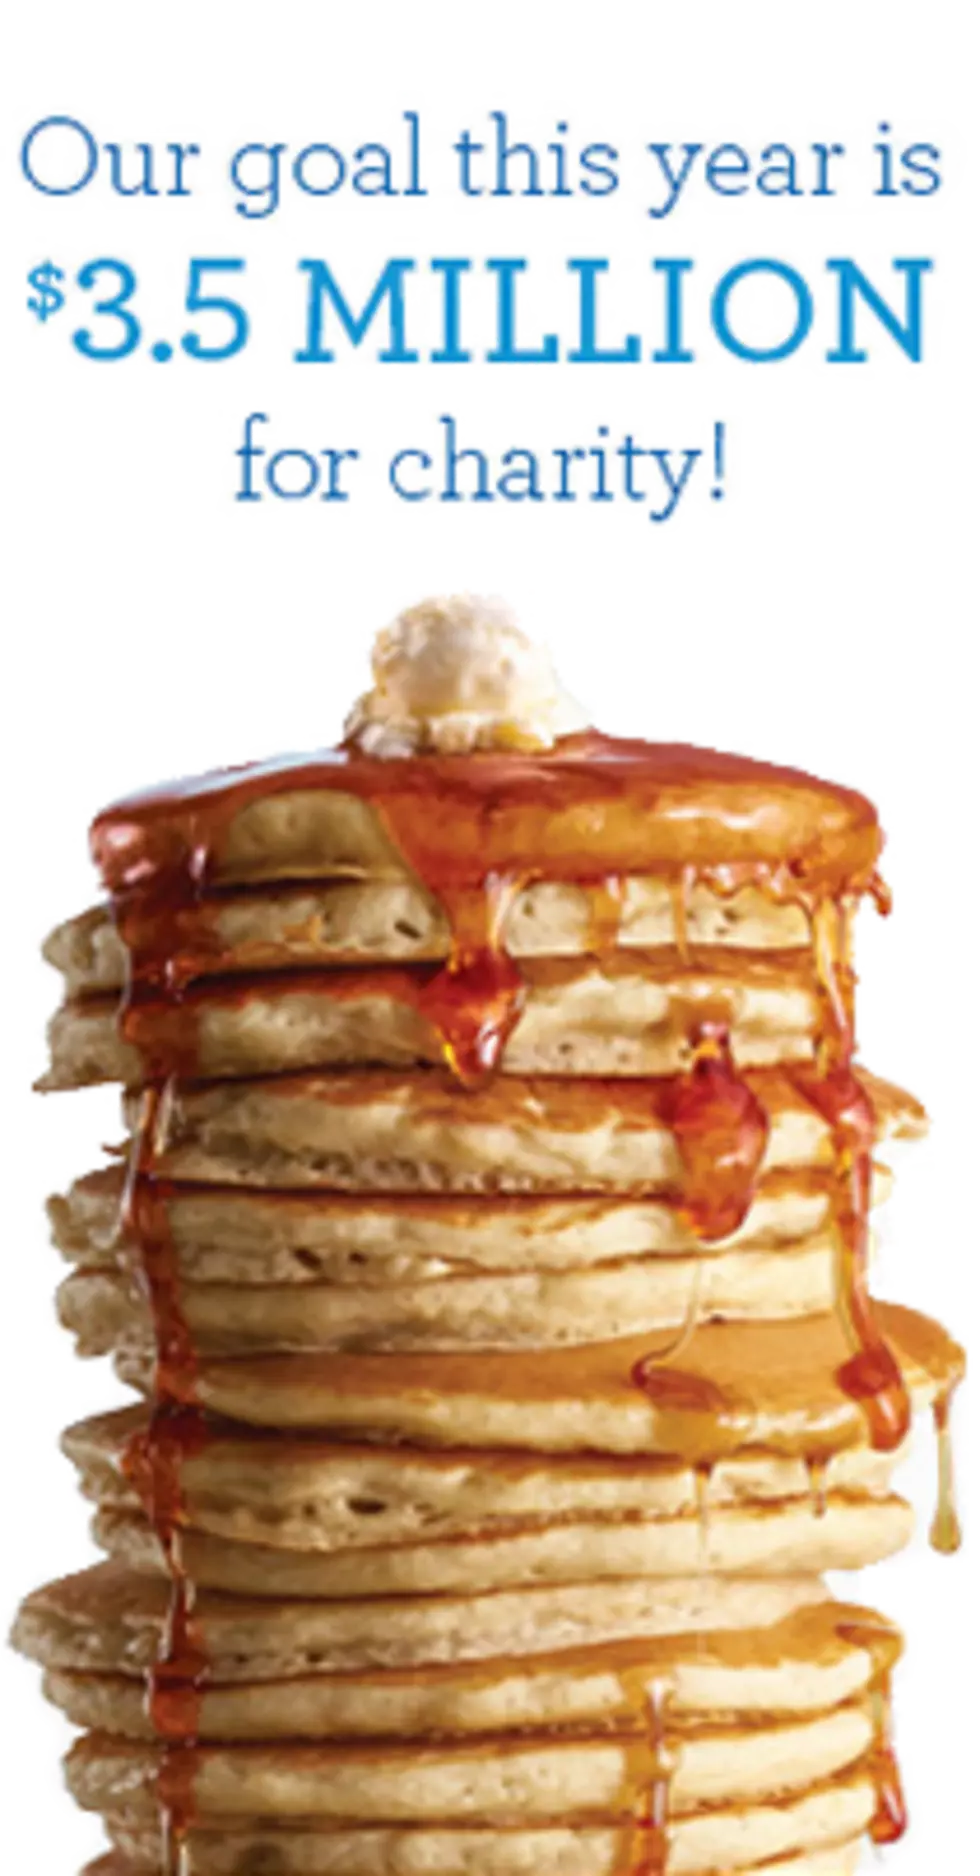 Free Pancakes on Tuesday